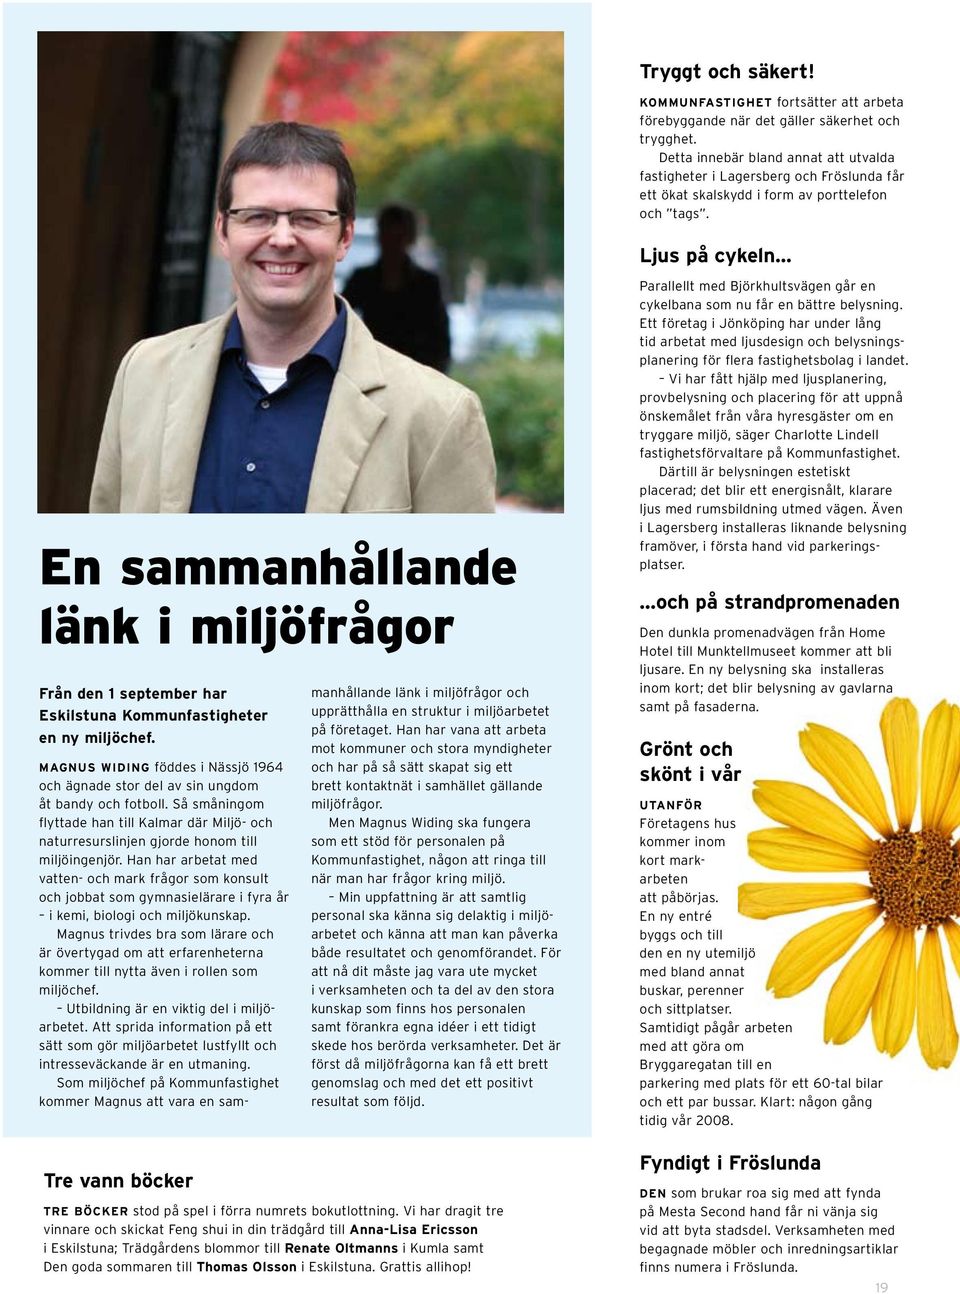 Ljus på cykeln En sammanhållande länk i miljöfrågor Från den 1 september har Eskilstuna Kommunfastigheter en ny miljöchef.